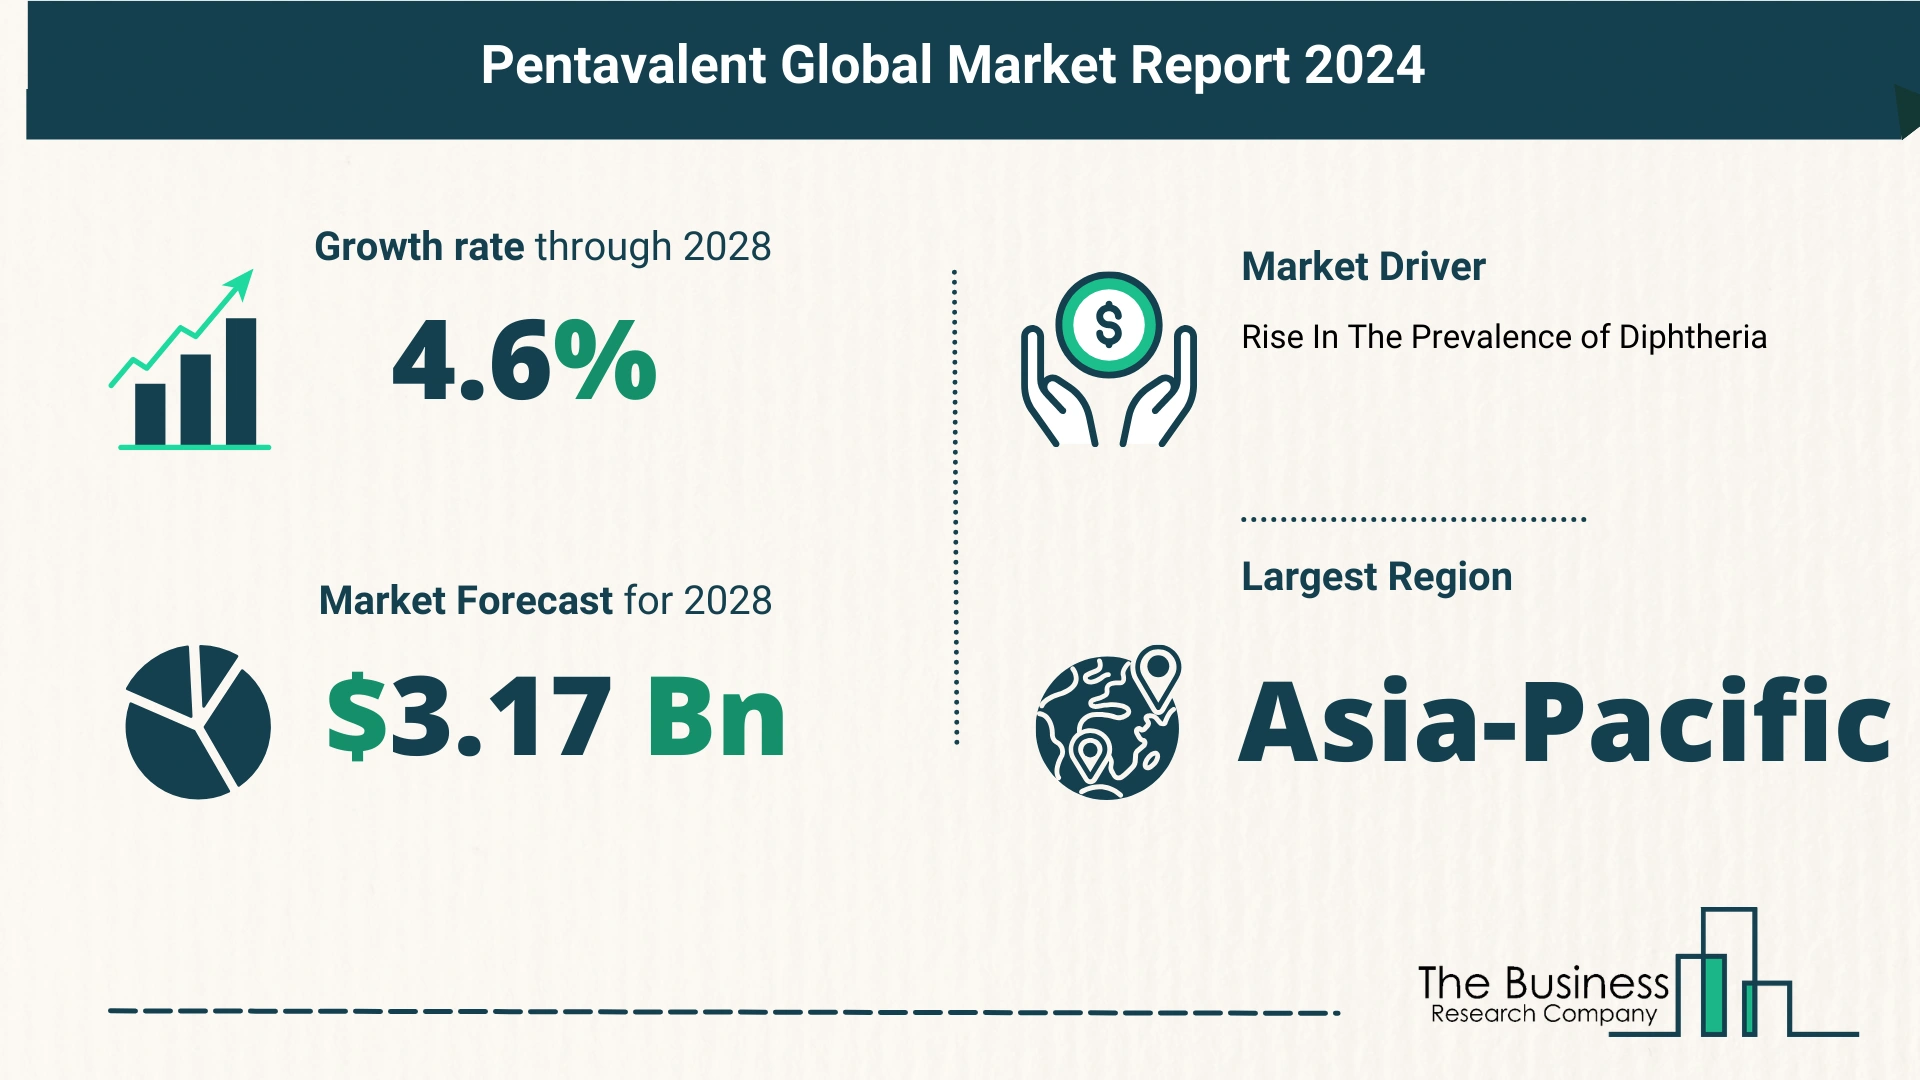 Global Pentavalent Market Size